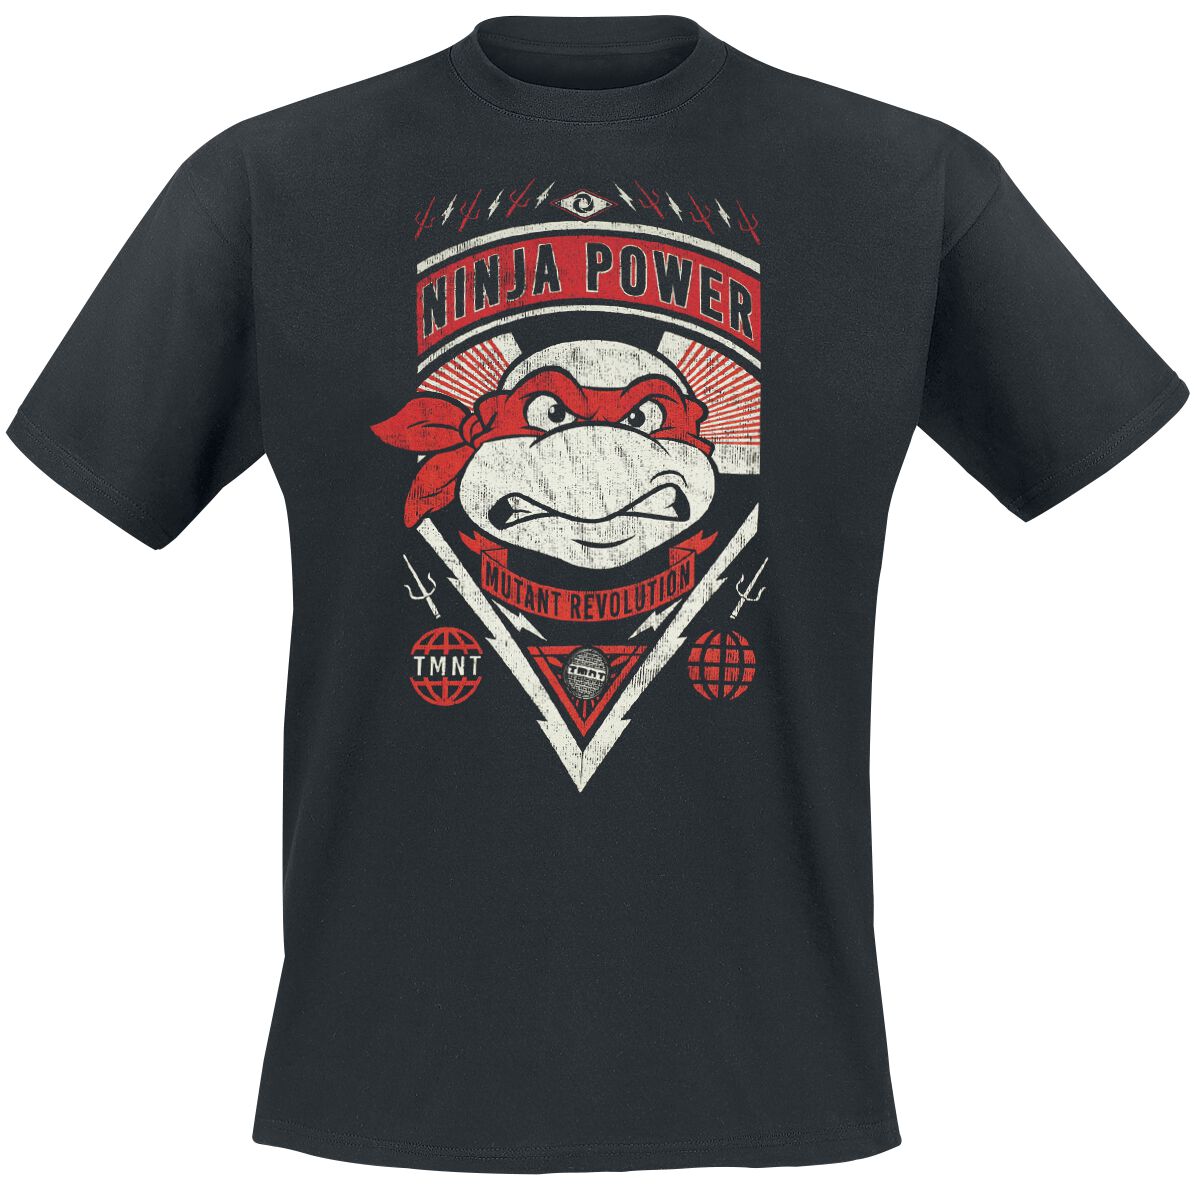 Teenage Mutant Ninja Turtles T-Shirt - Raphael - Ninja Power - S bis XXL - für Männer - Größe M - schwarz  - Lizenzierter Fanartikel